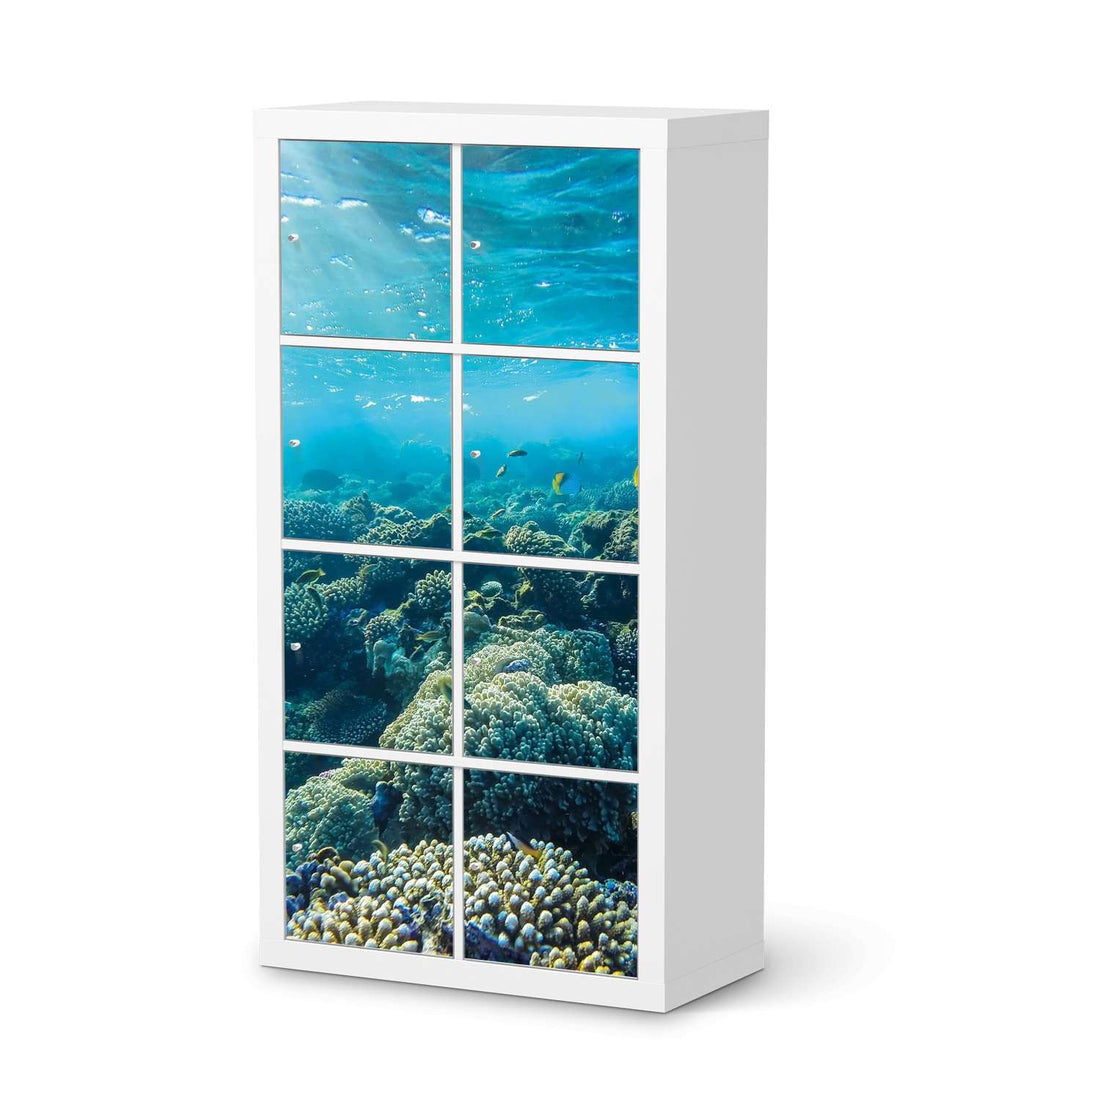 Folie für Möbel Underwater World - IKEA Kallax Regal 8 Türen  - weiss